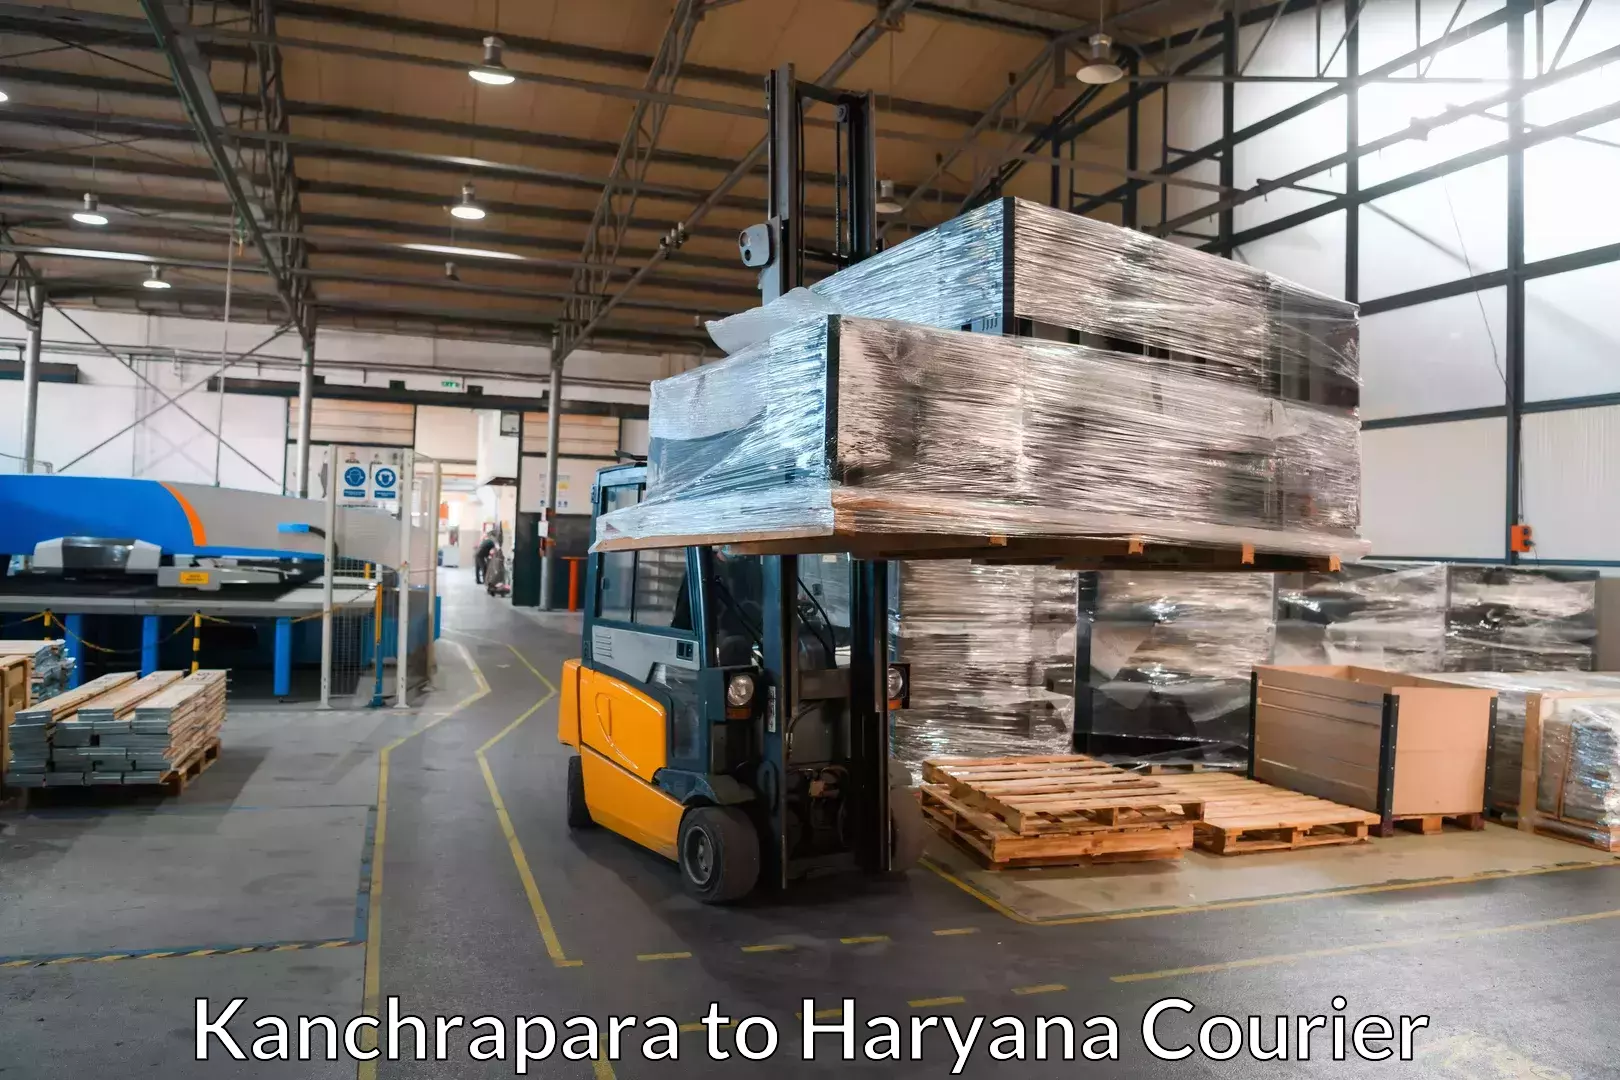 Quality furniture transport in Kanchrapara to Haryana